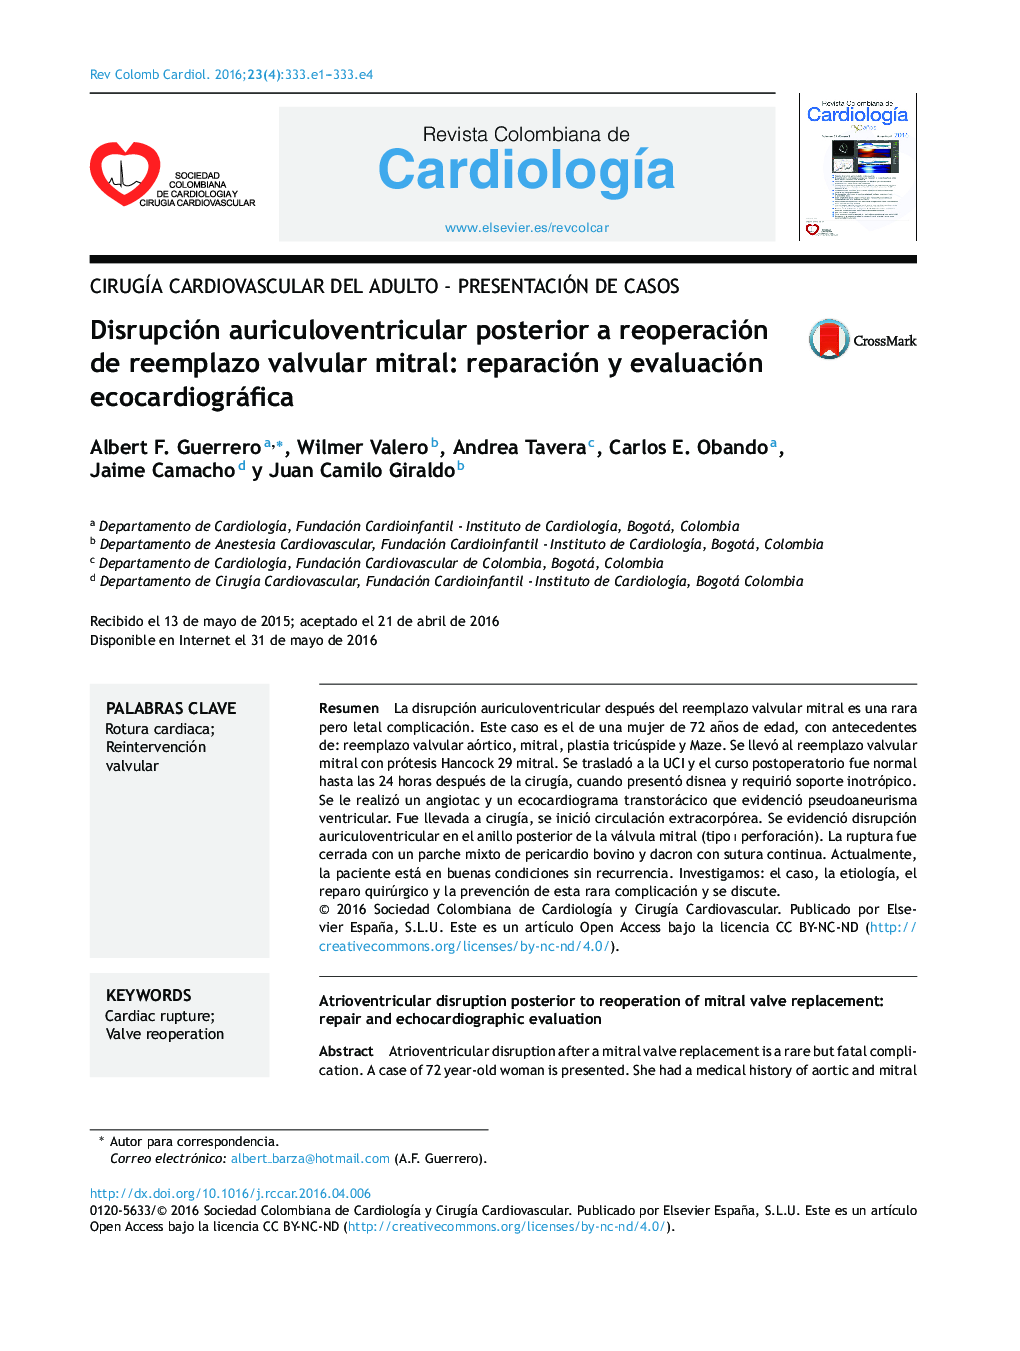 اختلال در اتیوژنیک بعد از مجددا استفاده از جایگزینی میترال: ترمیم و ارزیابی اکوکاردیوگرافی 